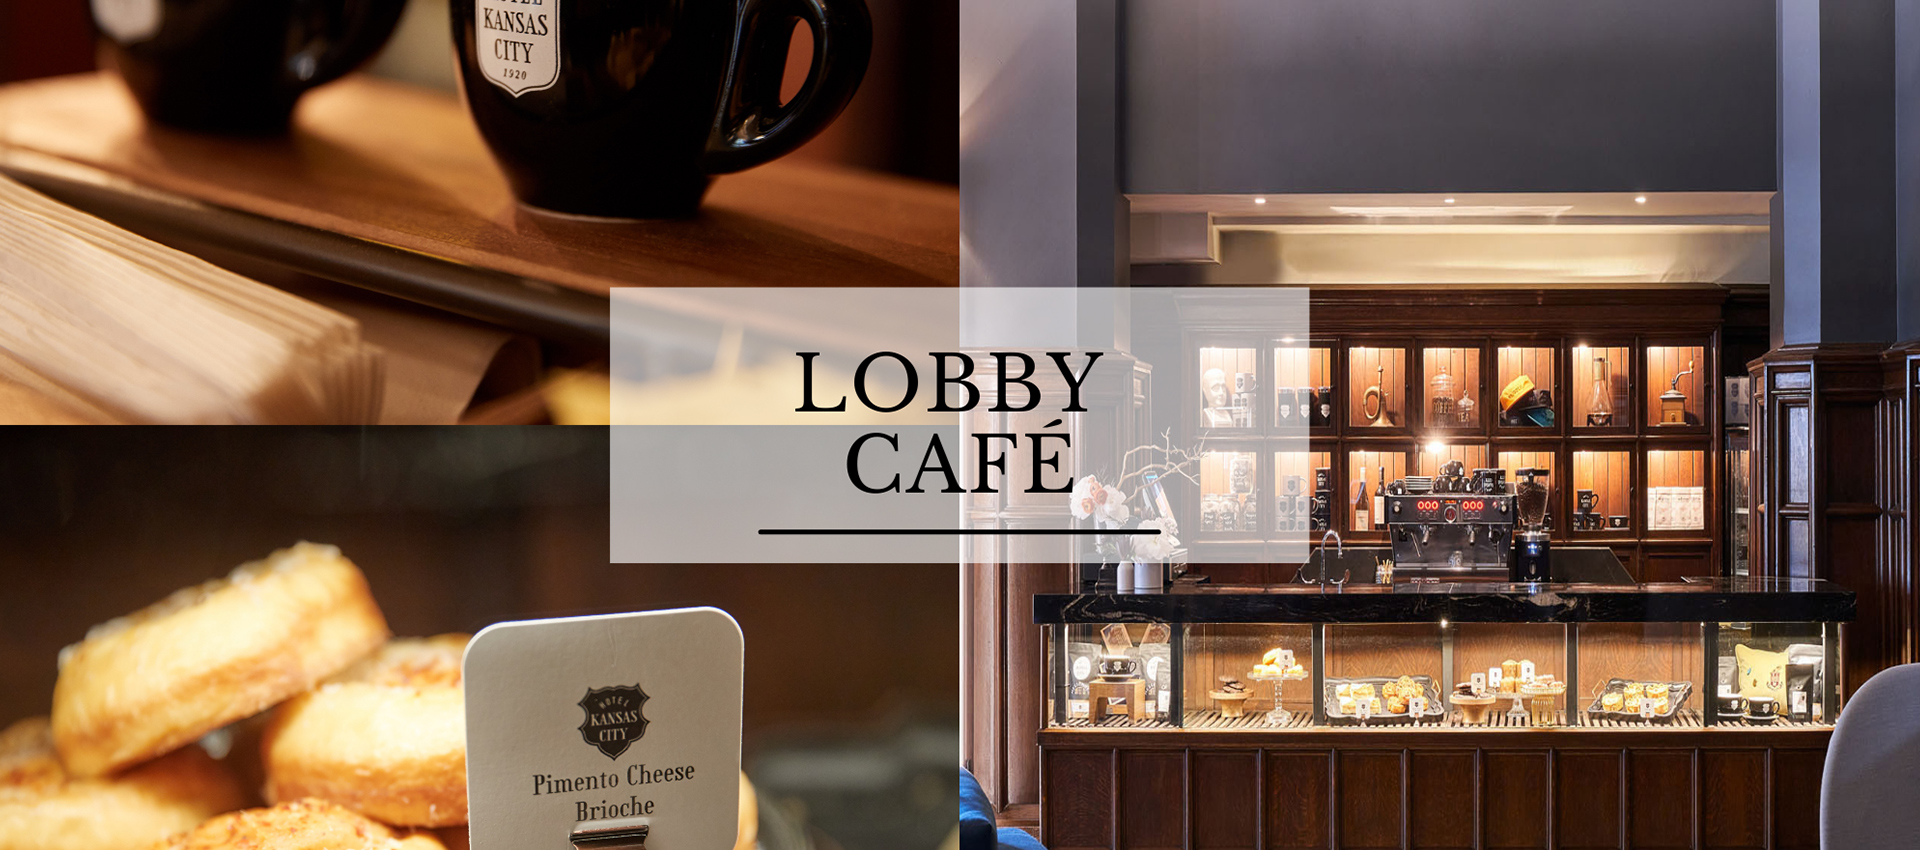 Lobby Café tiled images